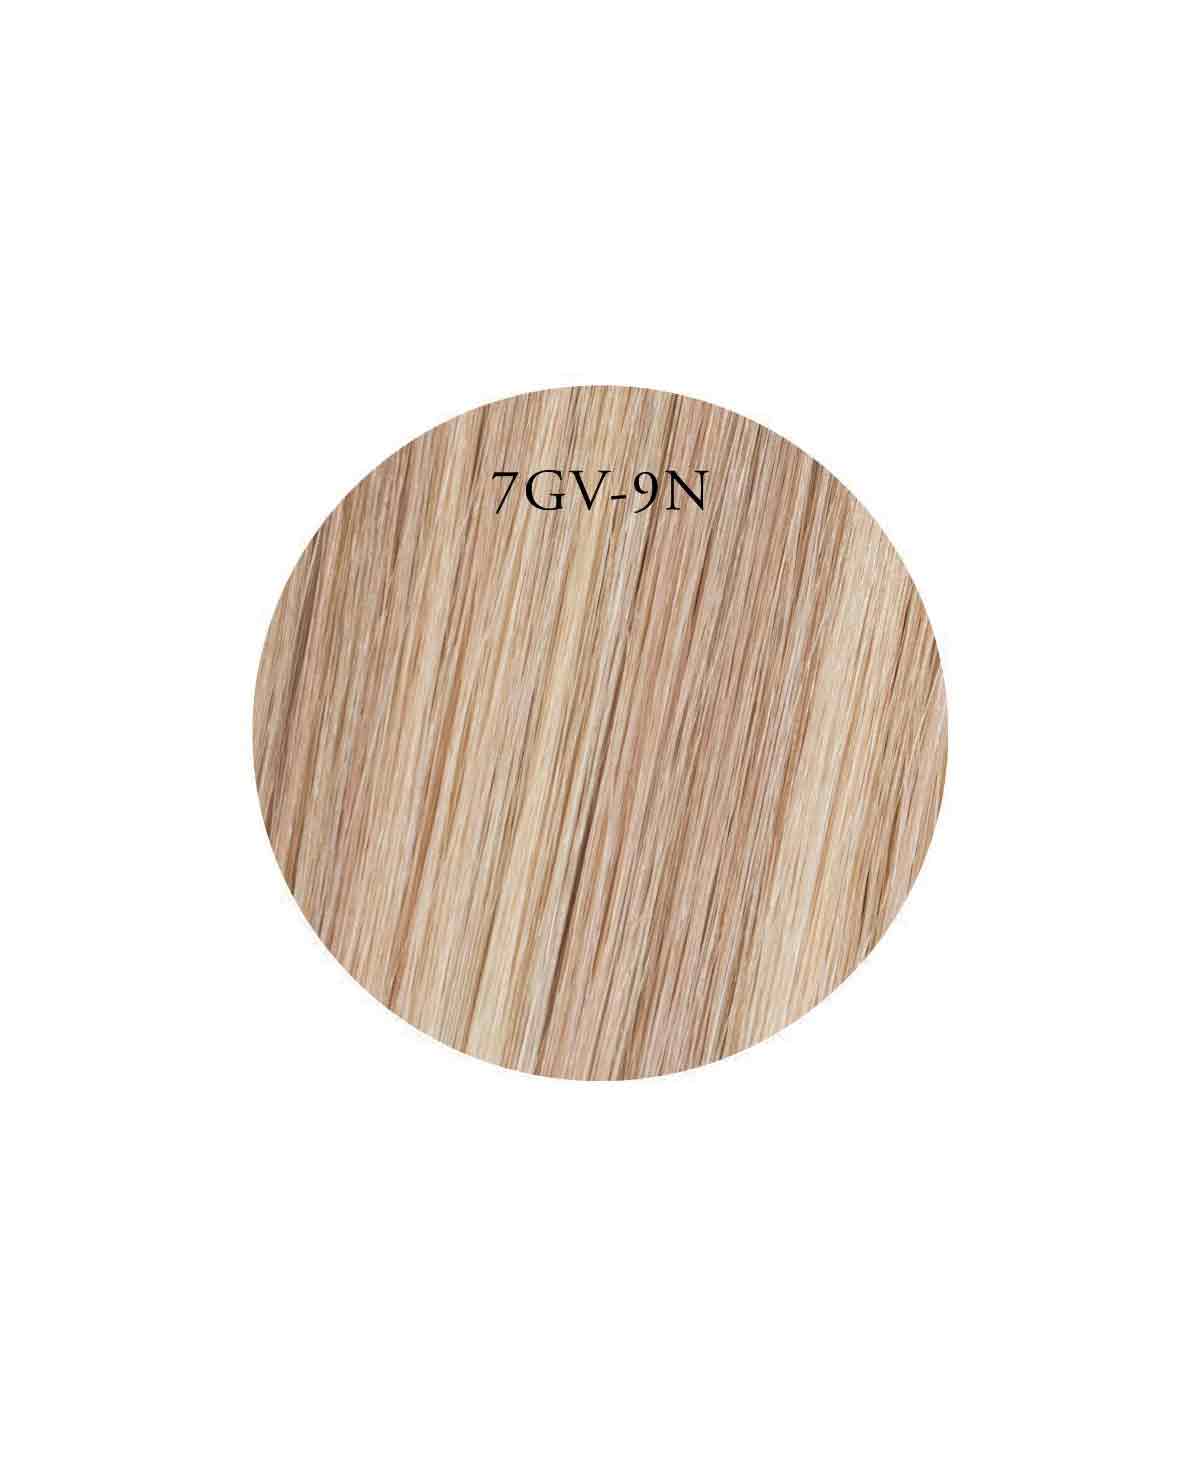 Showpony 45-50cm (20") 7 Piece Clip In Hair Extension - 7GV-9N Honey Ginger Highlight